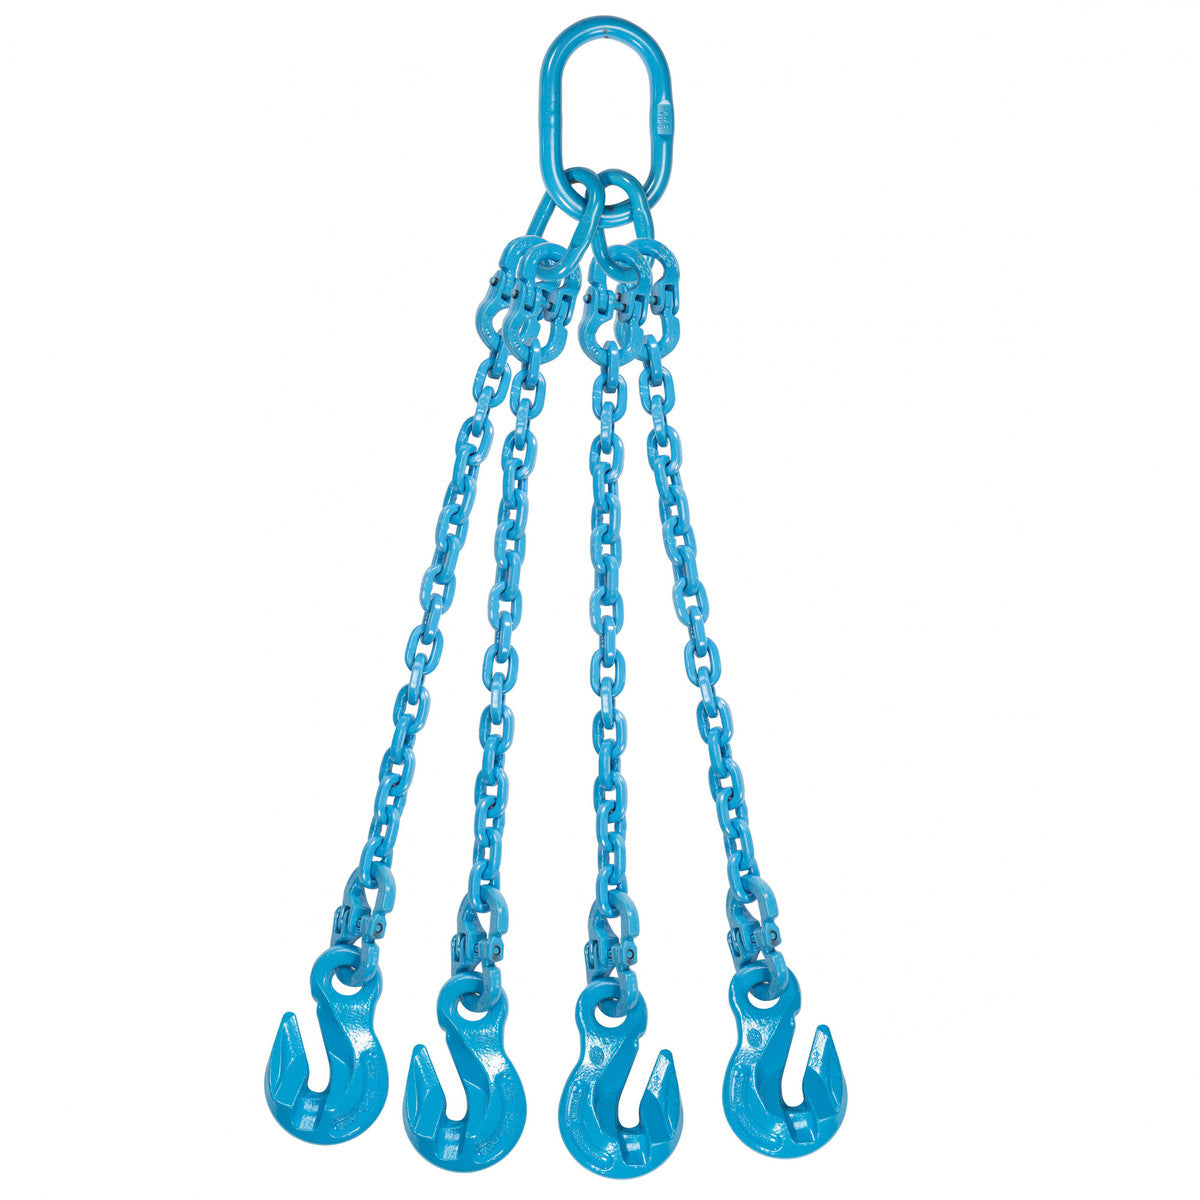 9/32" x 6' - Pewag 4 Leg Chain Sling w/ Grab Hooks - Grade 120